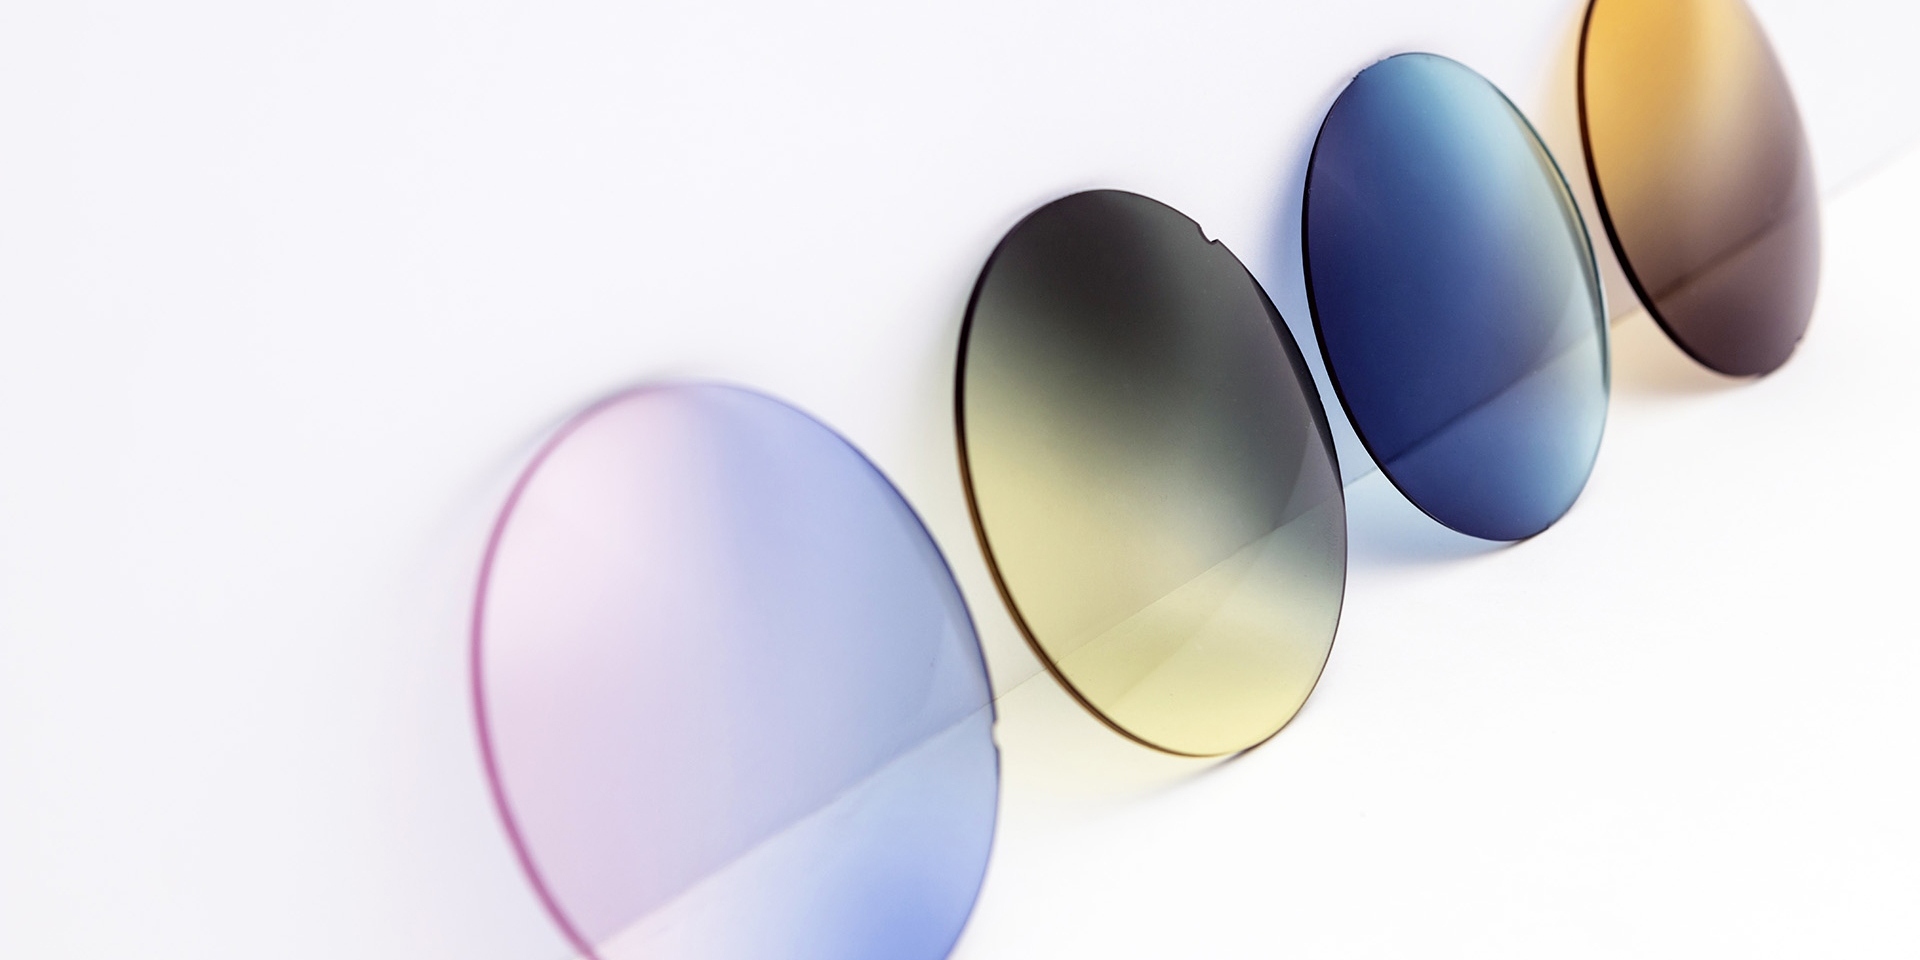 放置於白色平面上的各種染色太陽鏡鏡片：粉紫色、黃灰色、漸變藍色和漸變啡色。